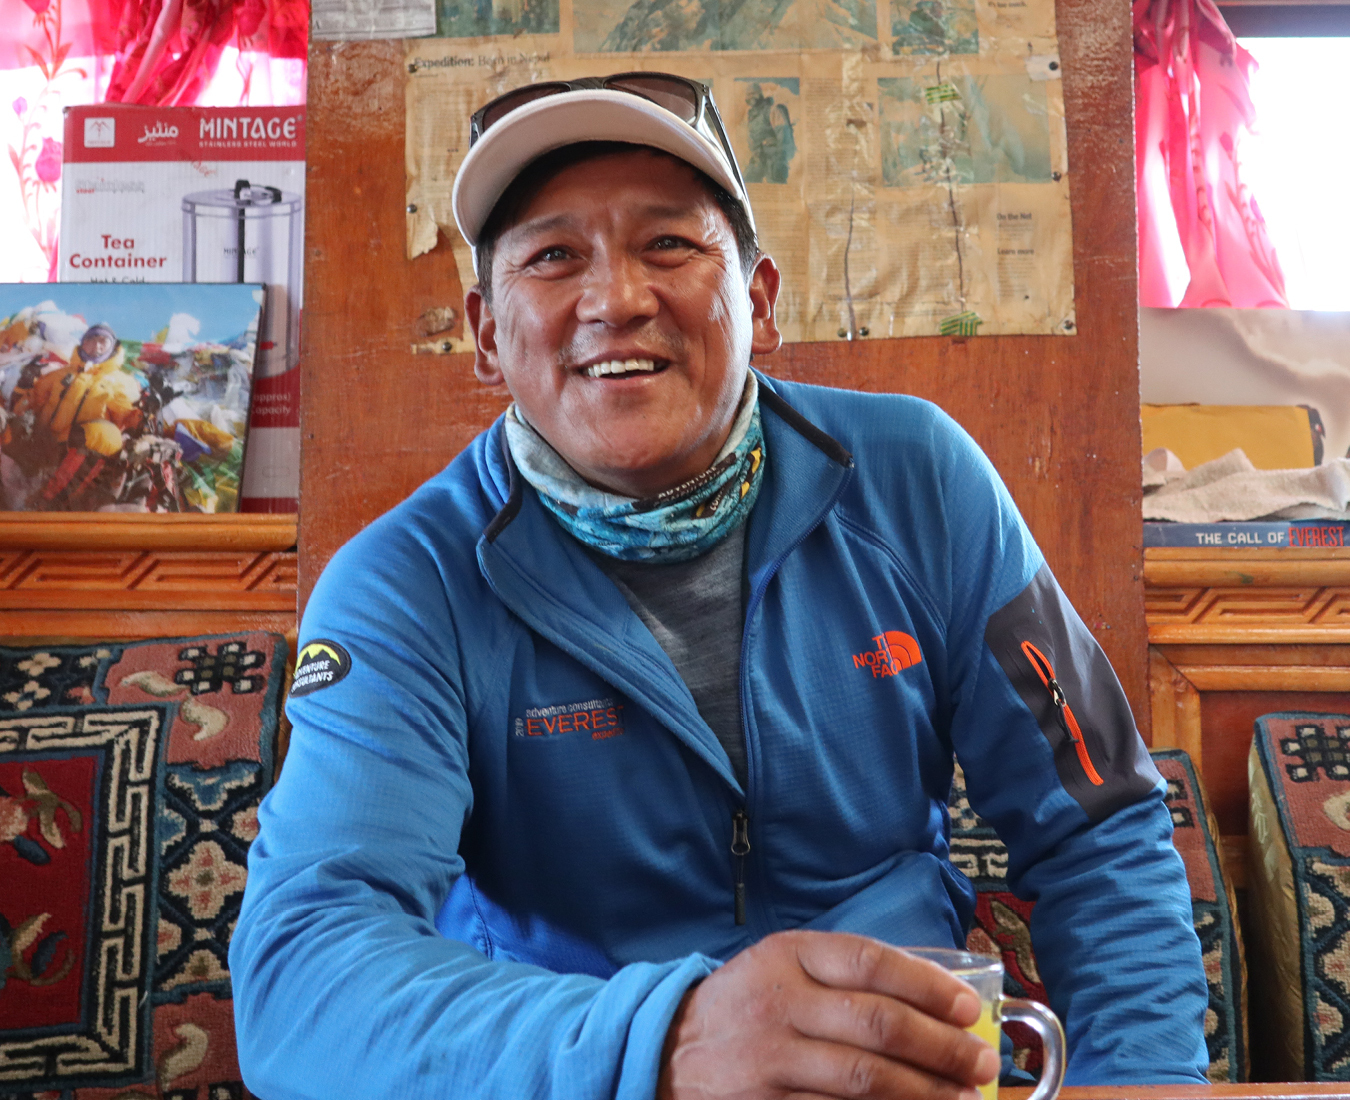 Ang Dorjee Sherpa